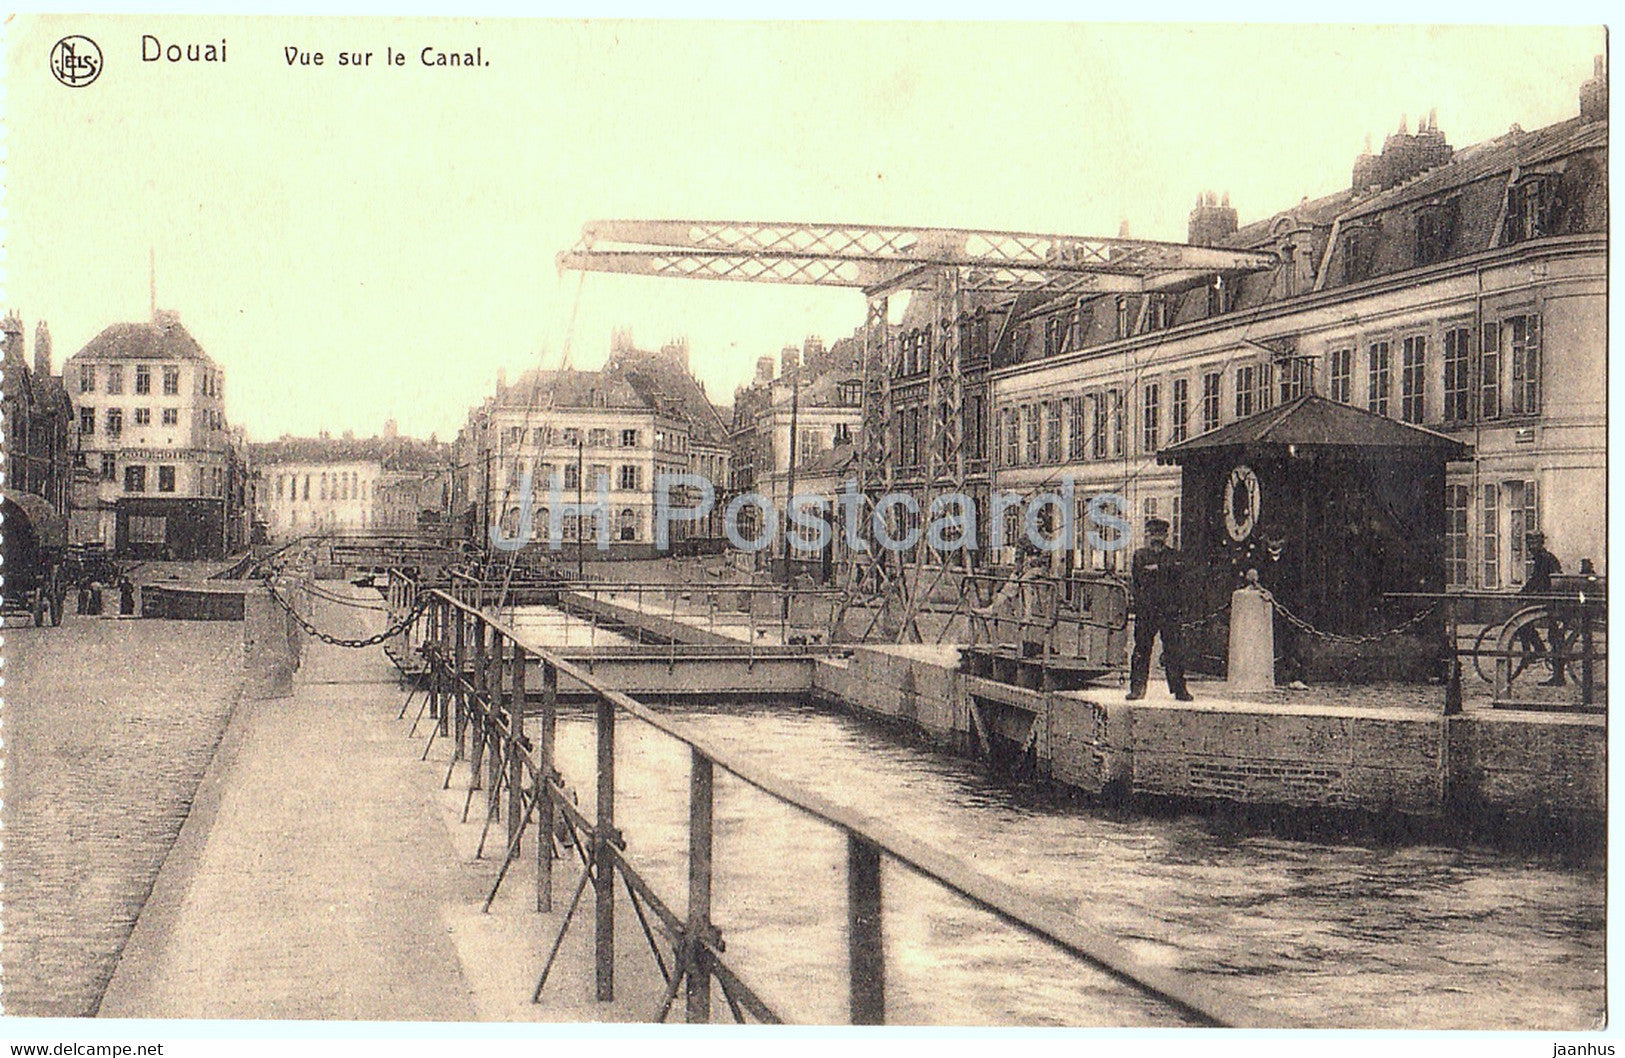 Douai - Vue sur le Canal - old postcard - France - unused - JH Postcards